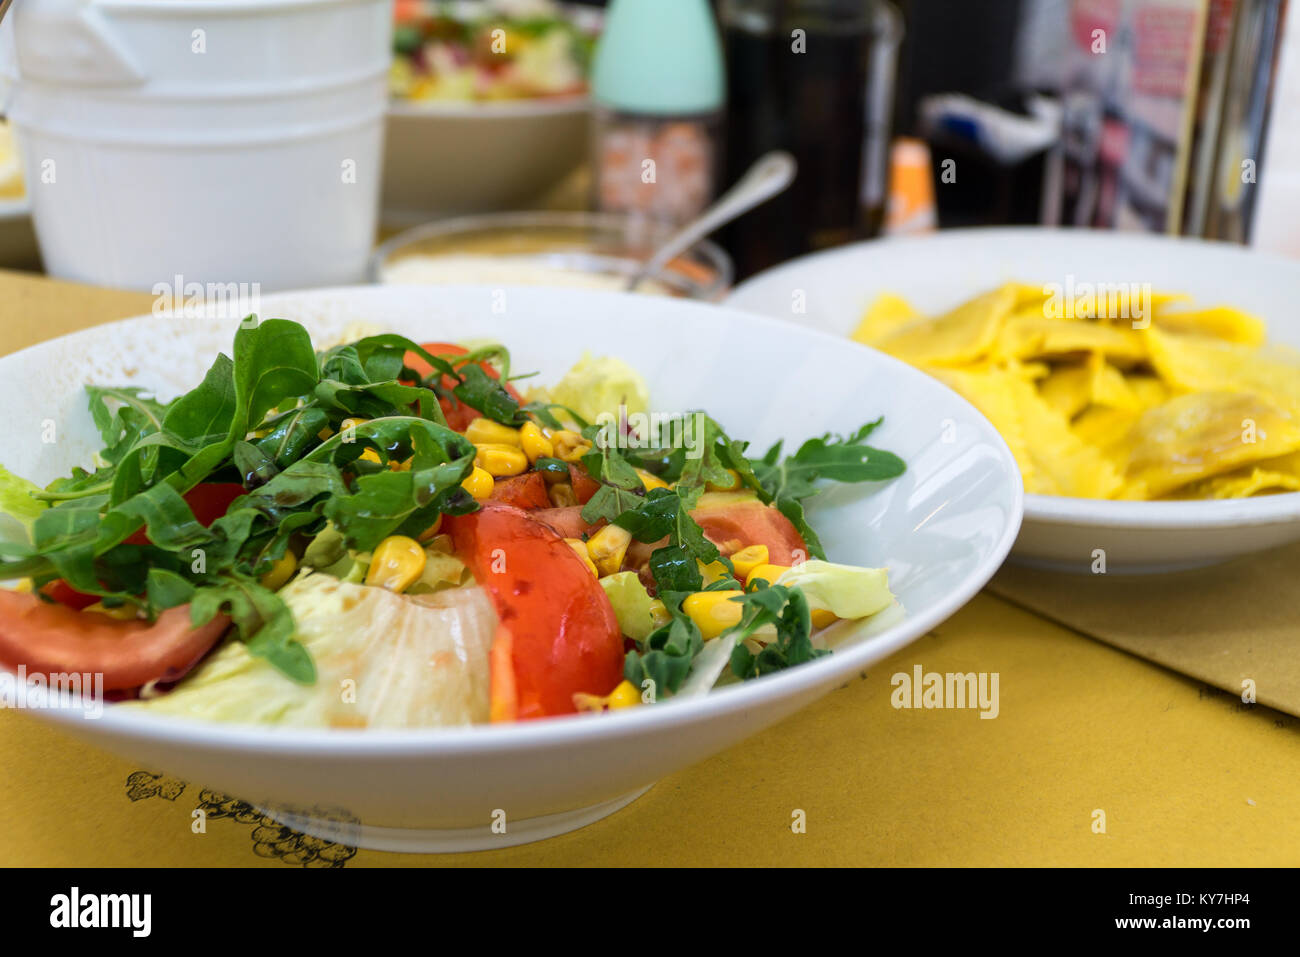 Salade de style italien, insalata, servi sur une plaque blanche dans un restaurant italien. Close-up. Banque D'Images